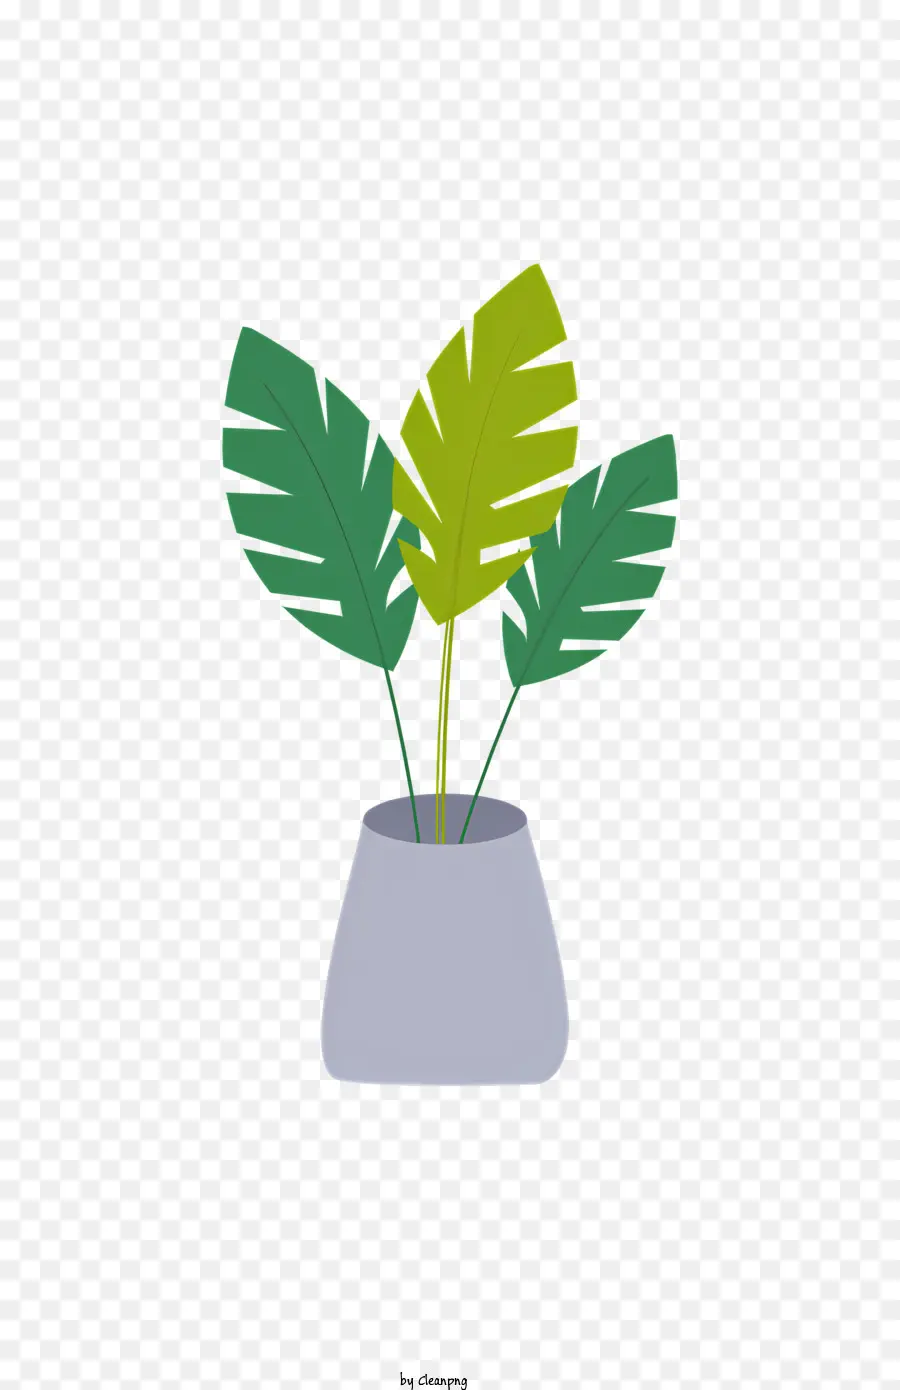 Augapfelpflanze in Topfgrünen Blättern Vase-förmige Pflanze abgerundeter Bodentopf - Grüne Pflanze im Topf auf schwarzem Hintergrund